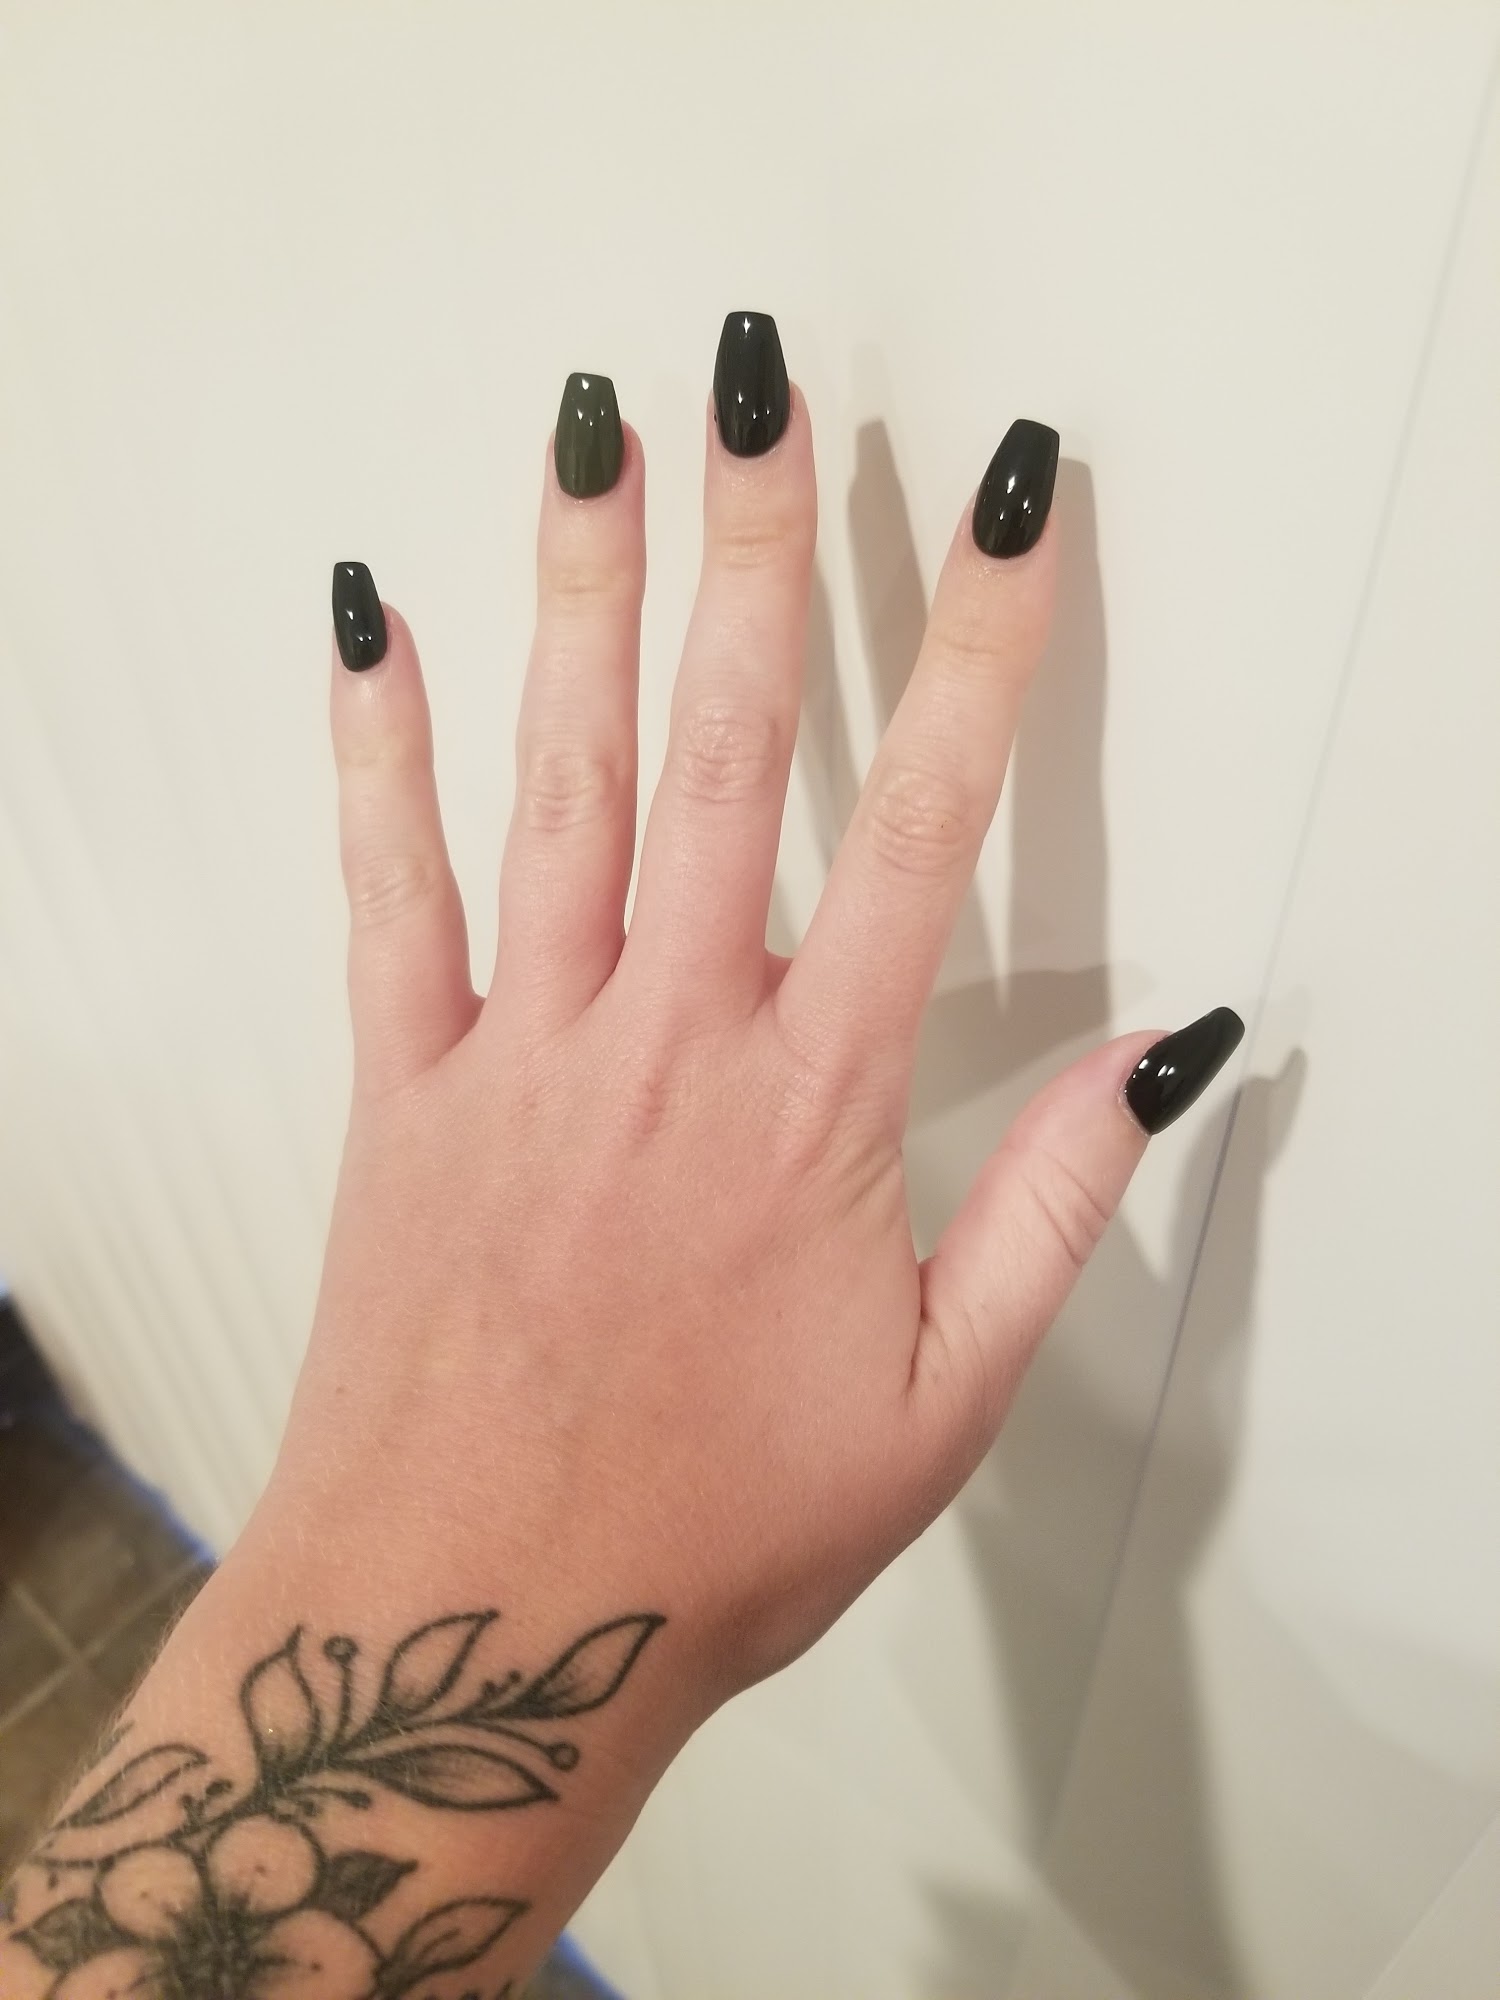 Amazing Nails